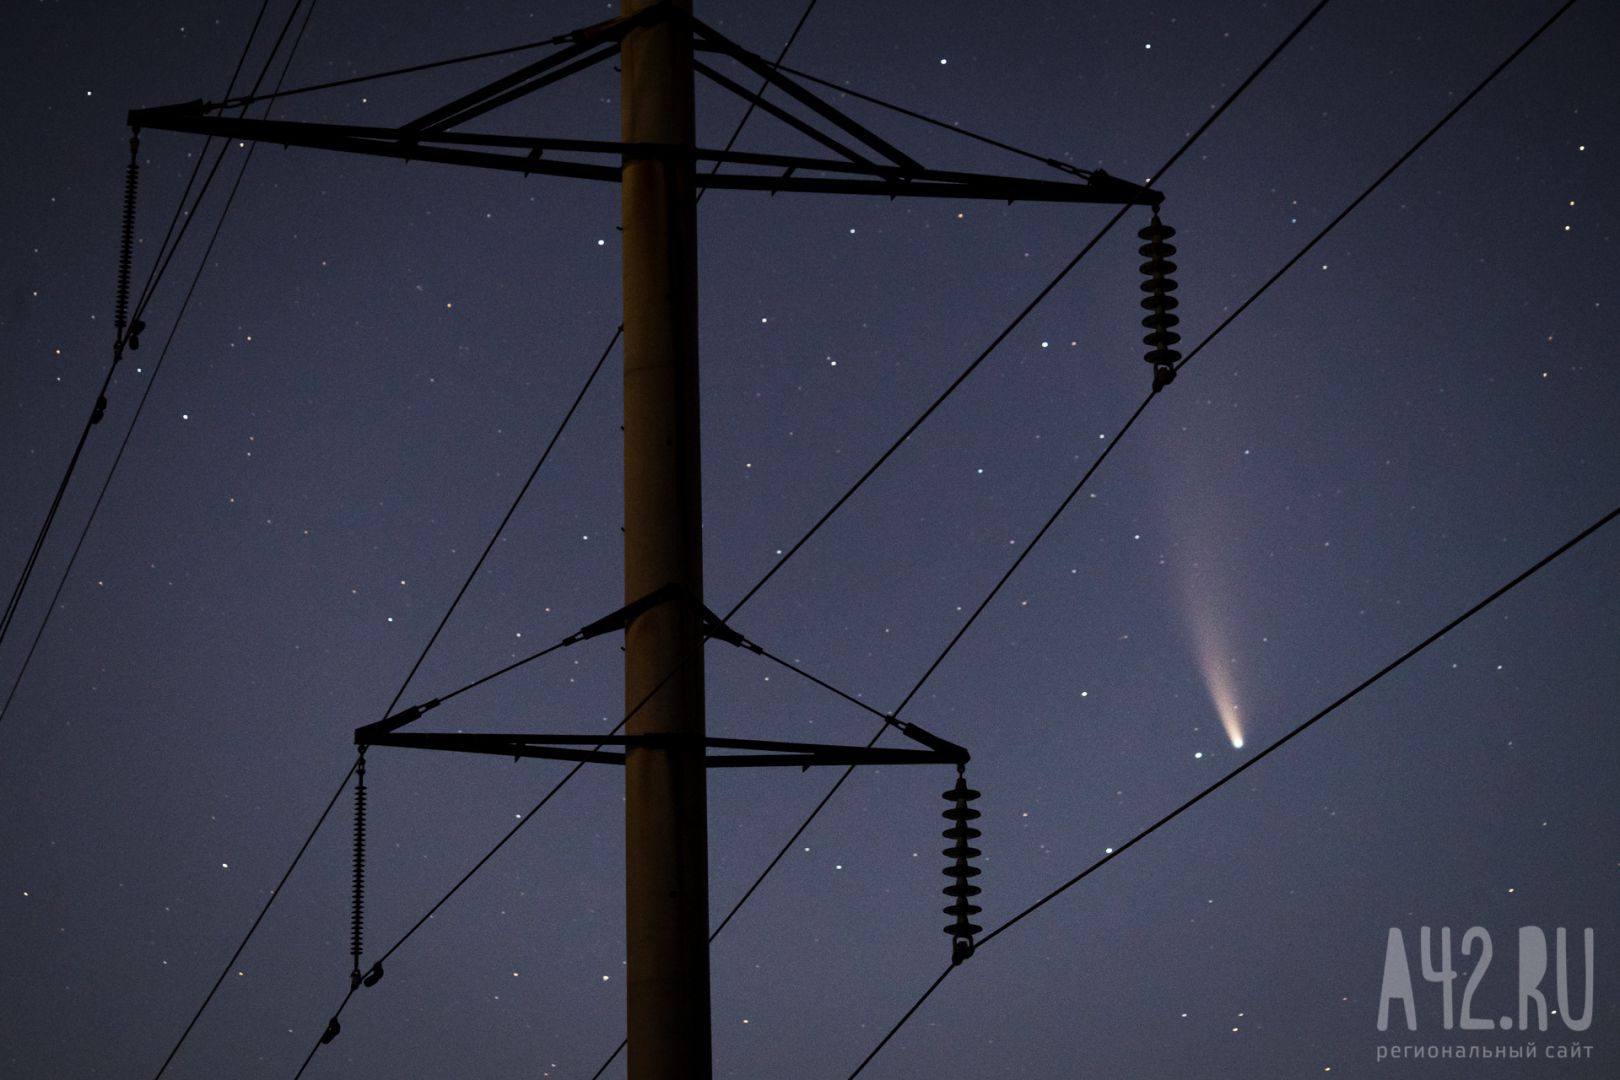 Специалист объяснил появление светящихся объектов в небе над Уралом